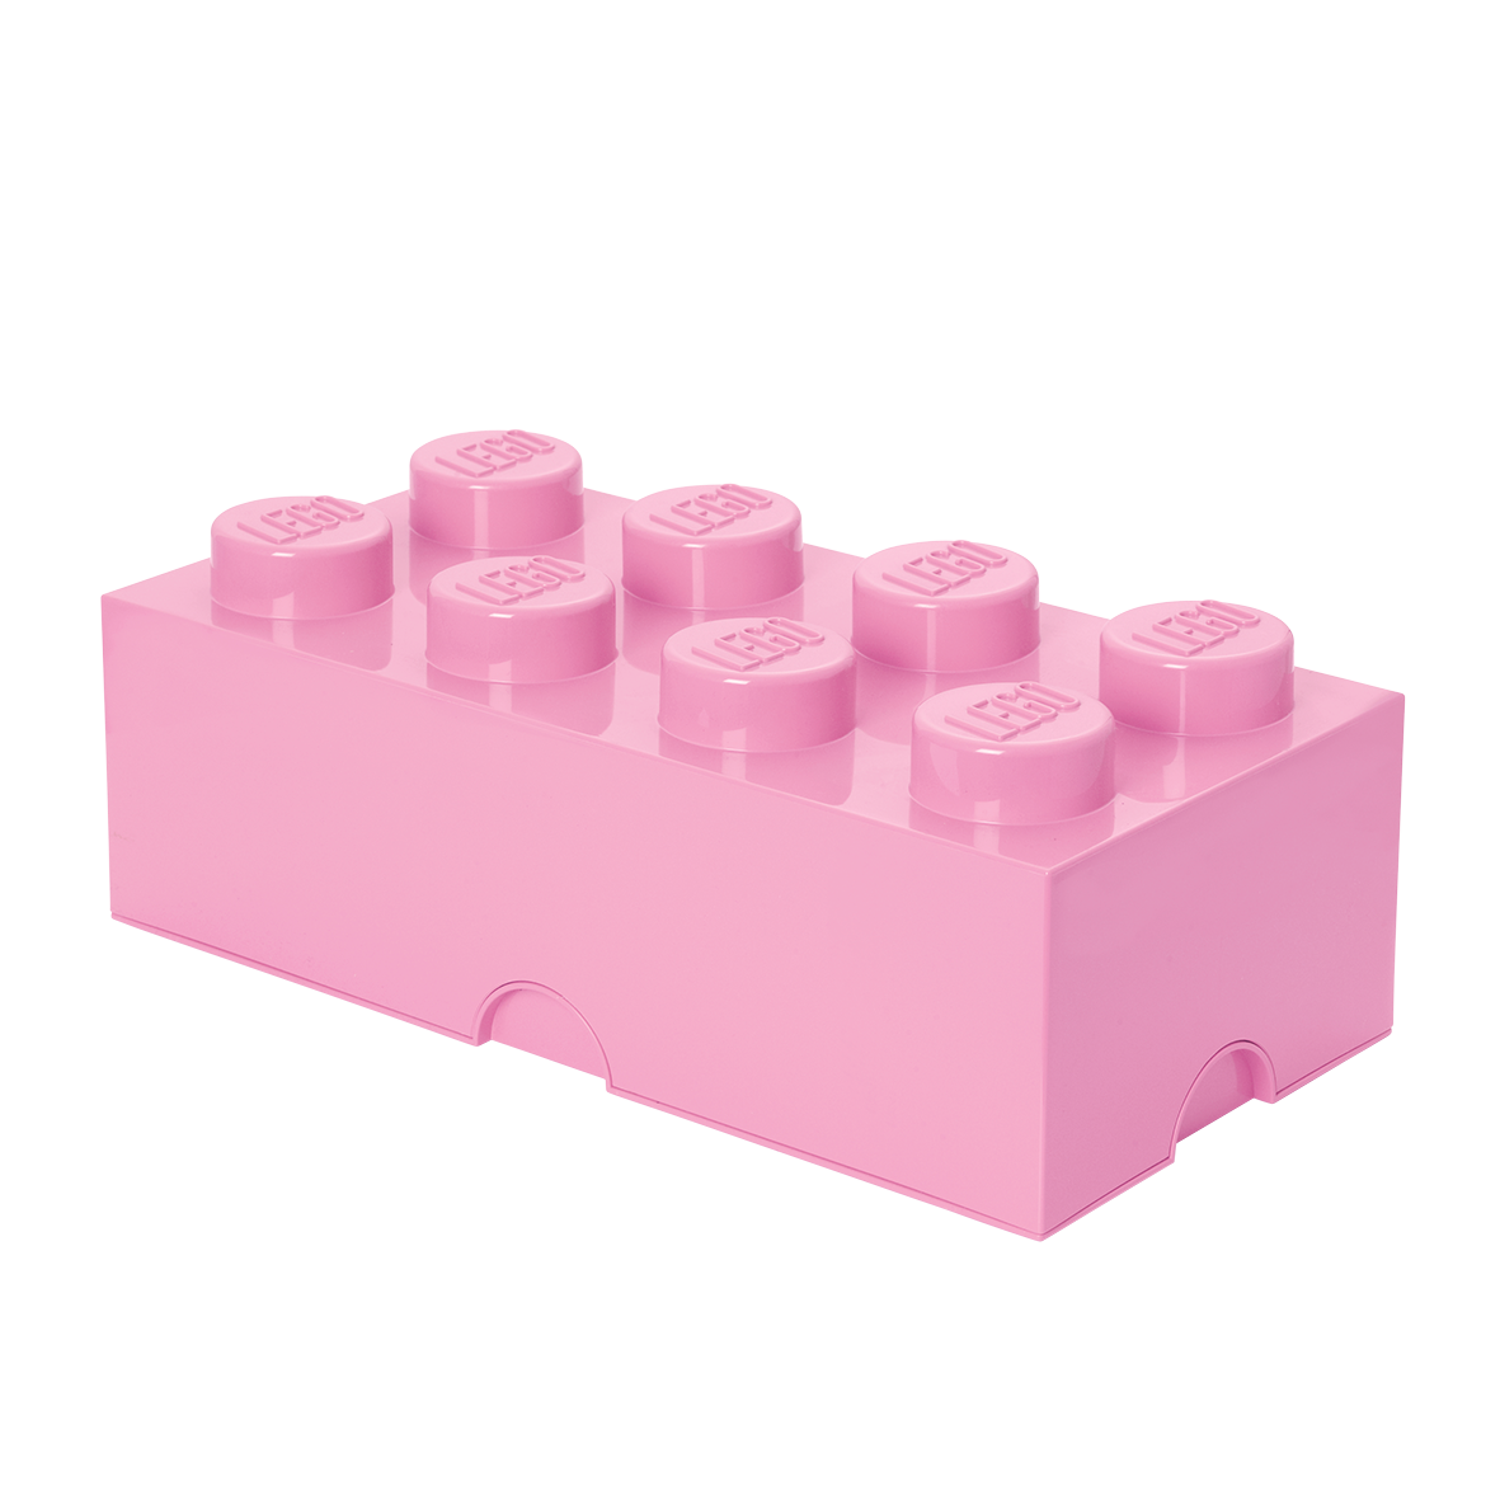 LEGO Rangements L4004LFPU pas cher, Brique de rangement Friends violet 8  plots